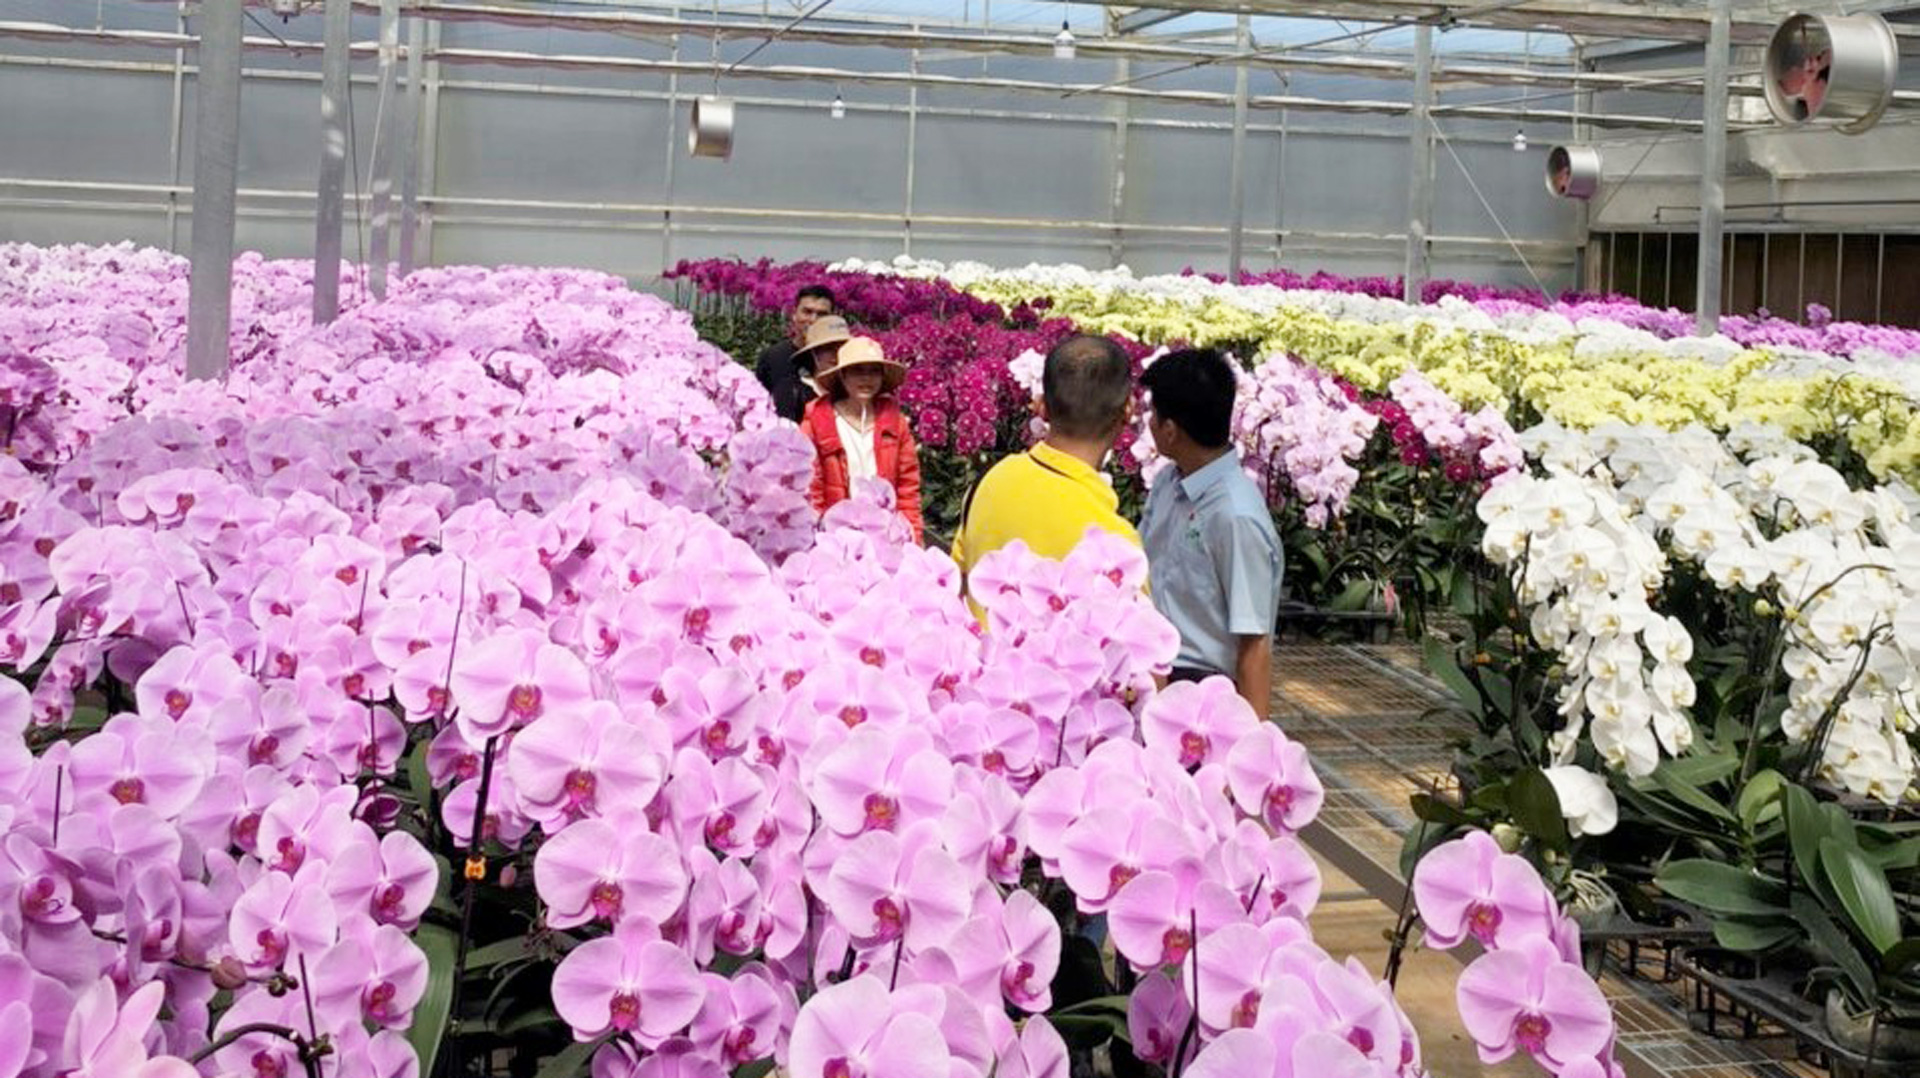 Trang trại hoa lan hồ điệp của Công ty TNHH Nông nghiệp công nghệ cao Yến Sang Anh ở xã Đạ Ròn, huyện Đơn Dương thu hoạch hàng ngày cung cấp theo nhu cầu thị trường tiềm năng trong nước